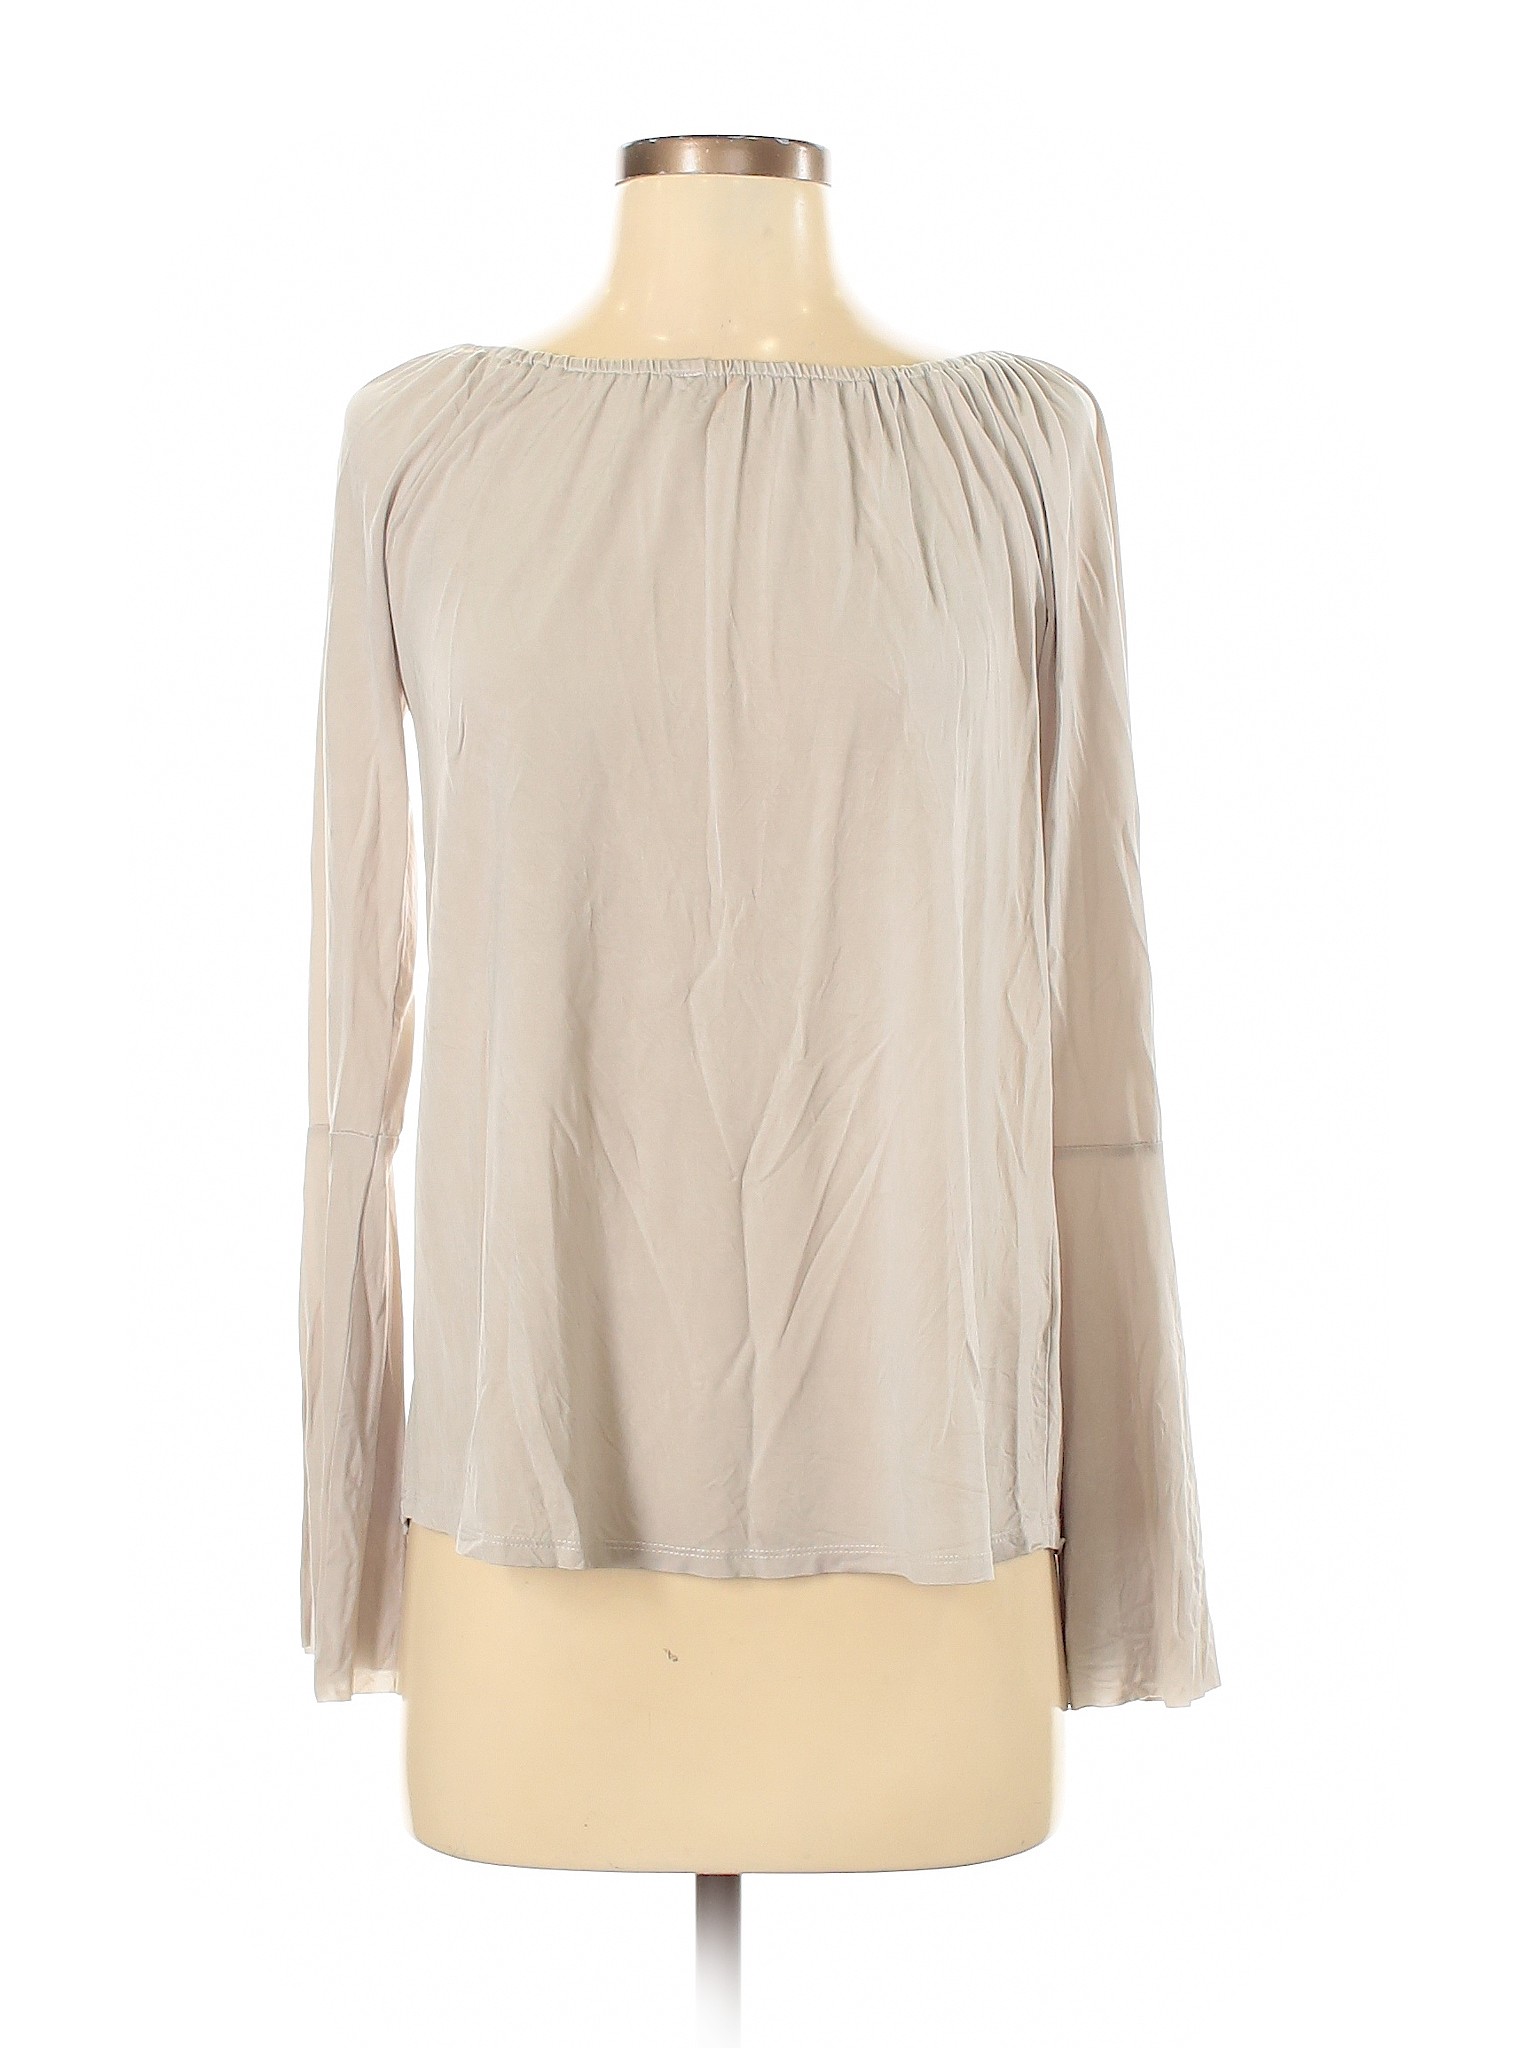 Ecru Women Brown 3/4 Sleeve Top XS | eBay